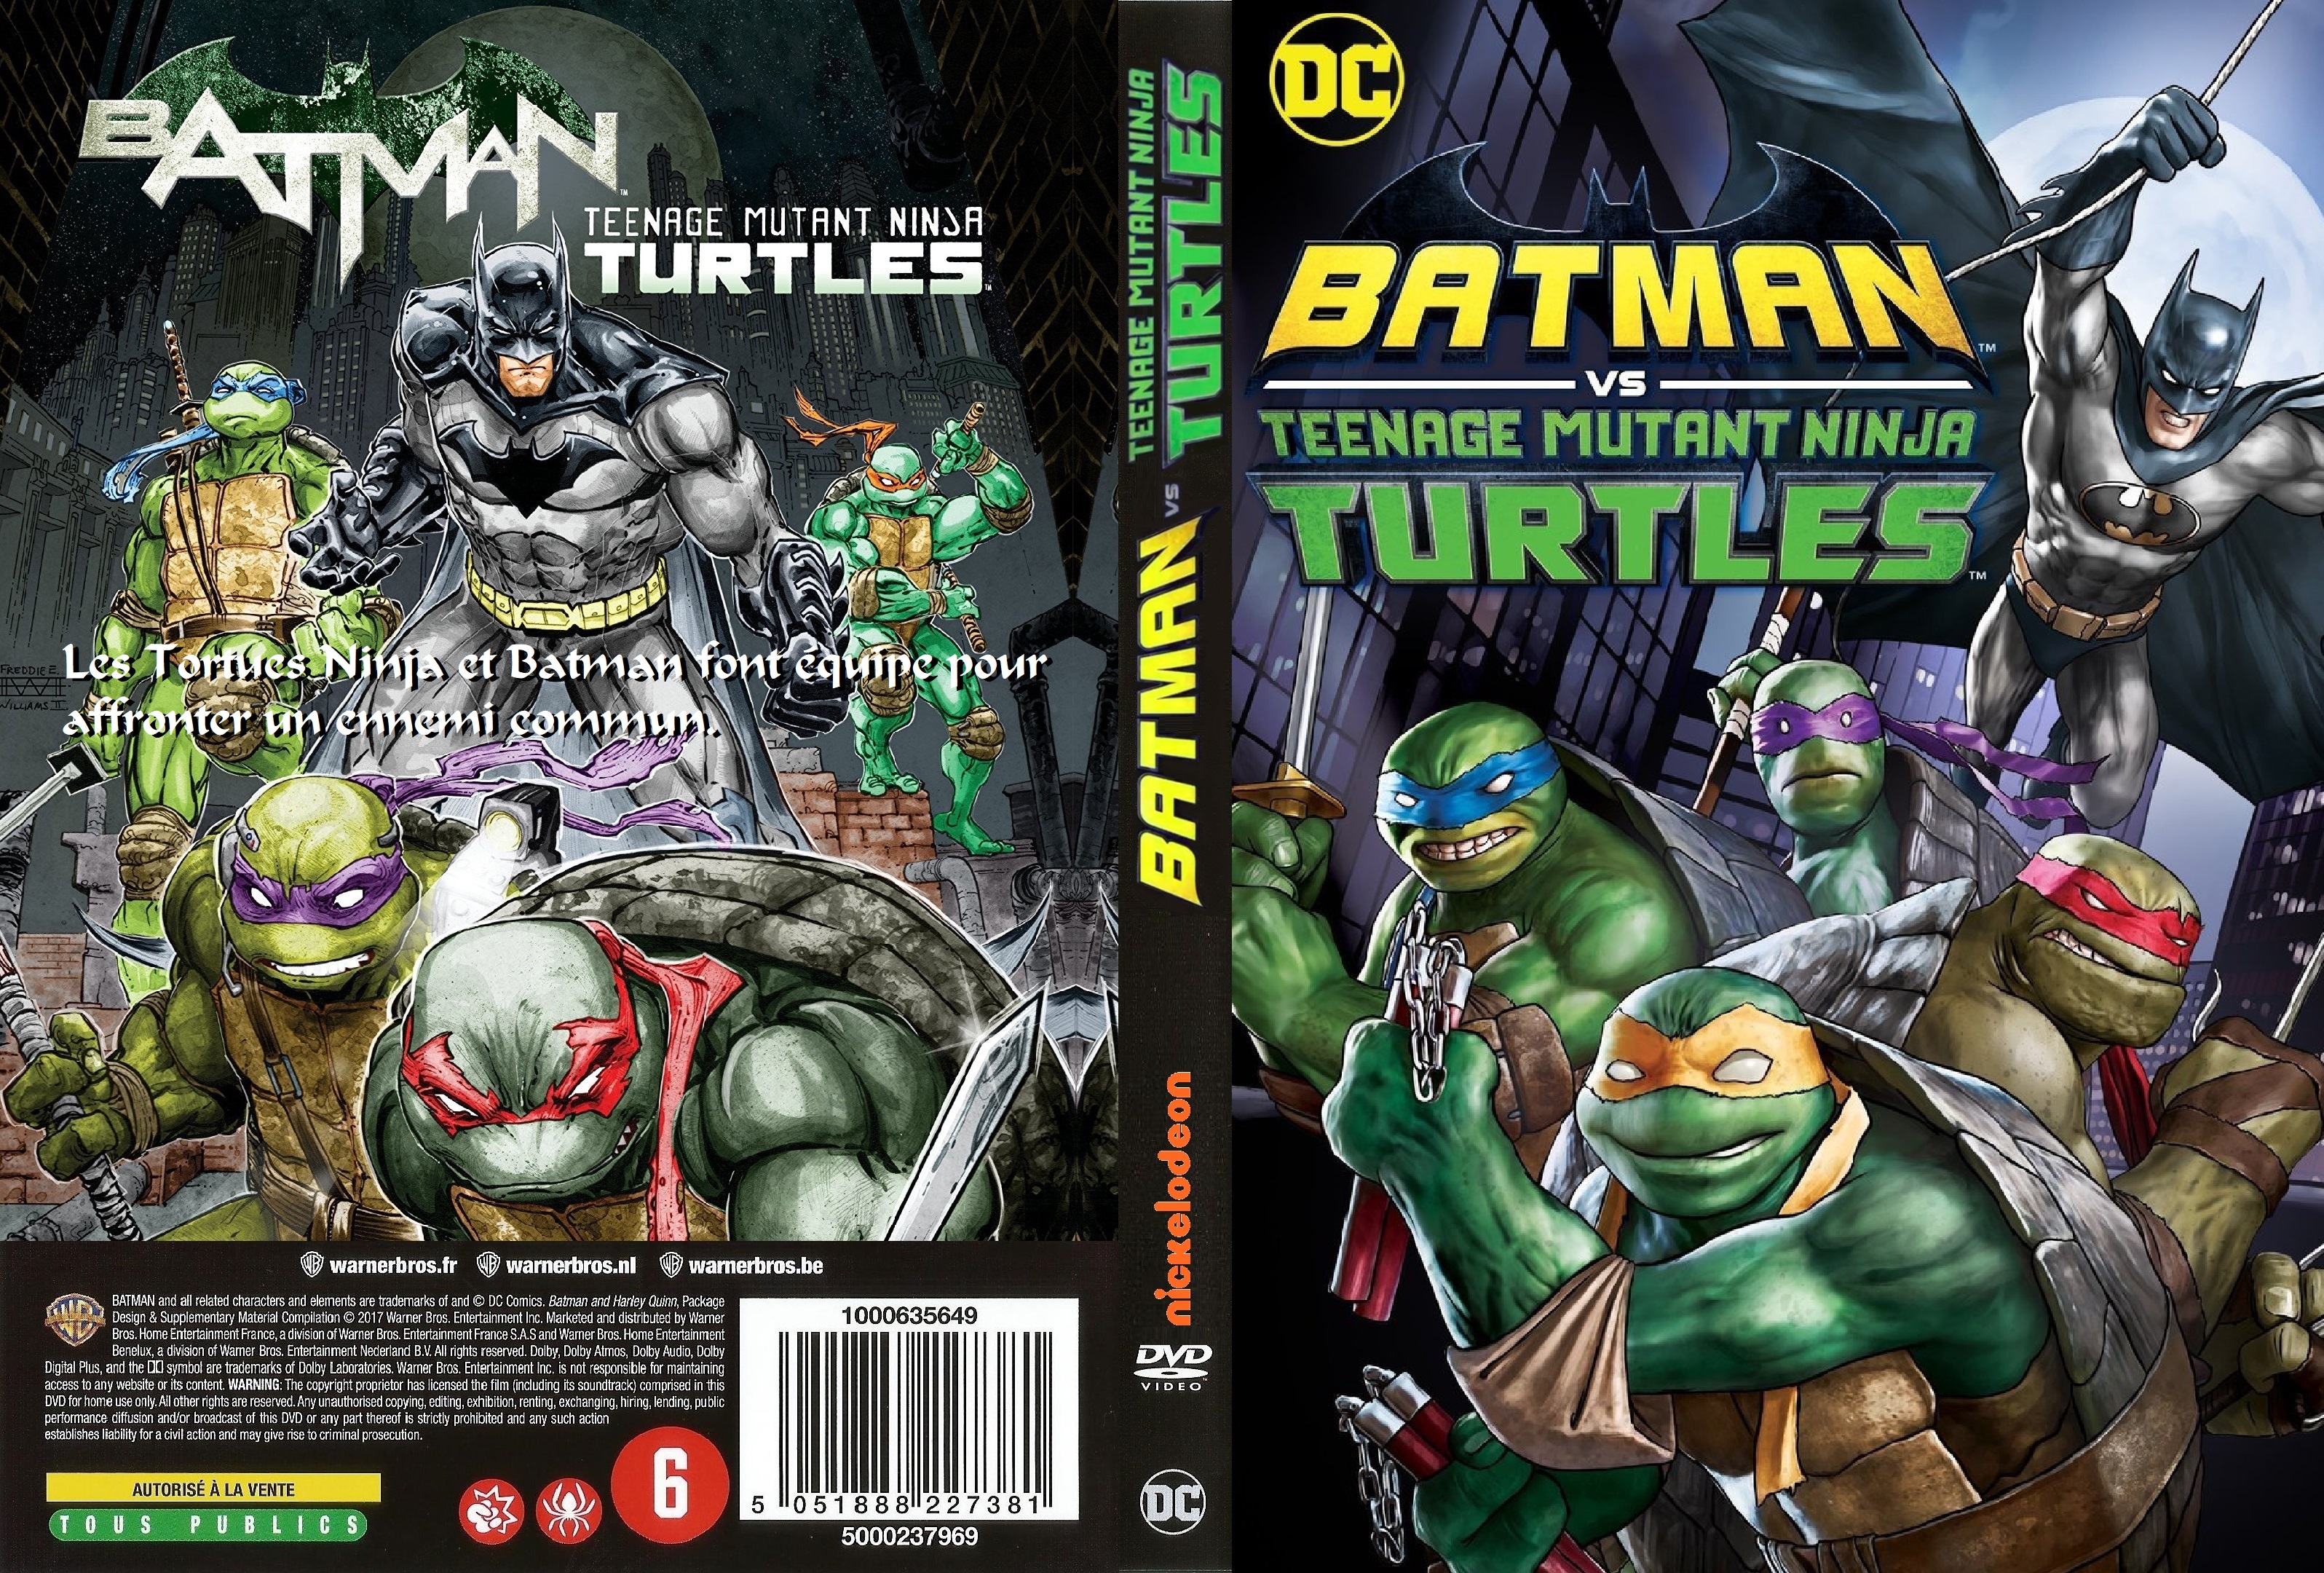 Jaquette DVD Batman vs Teenage Mutant Ninja Turtles custom